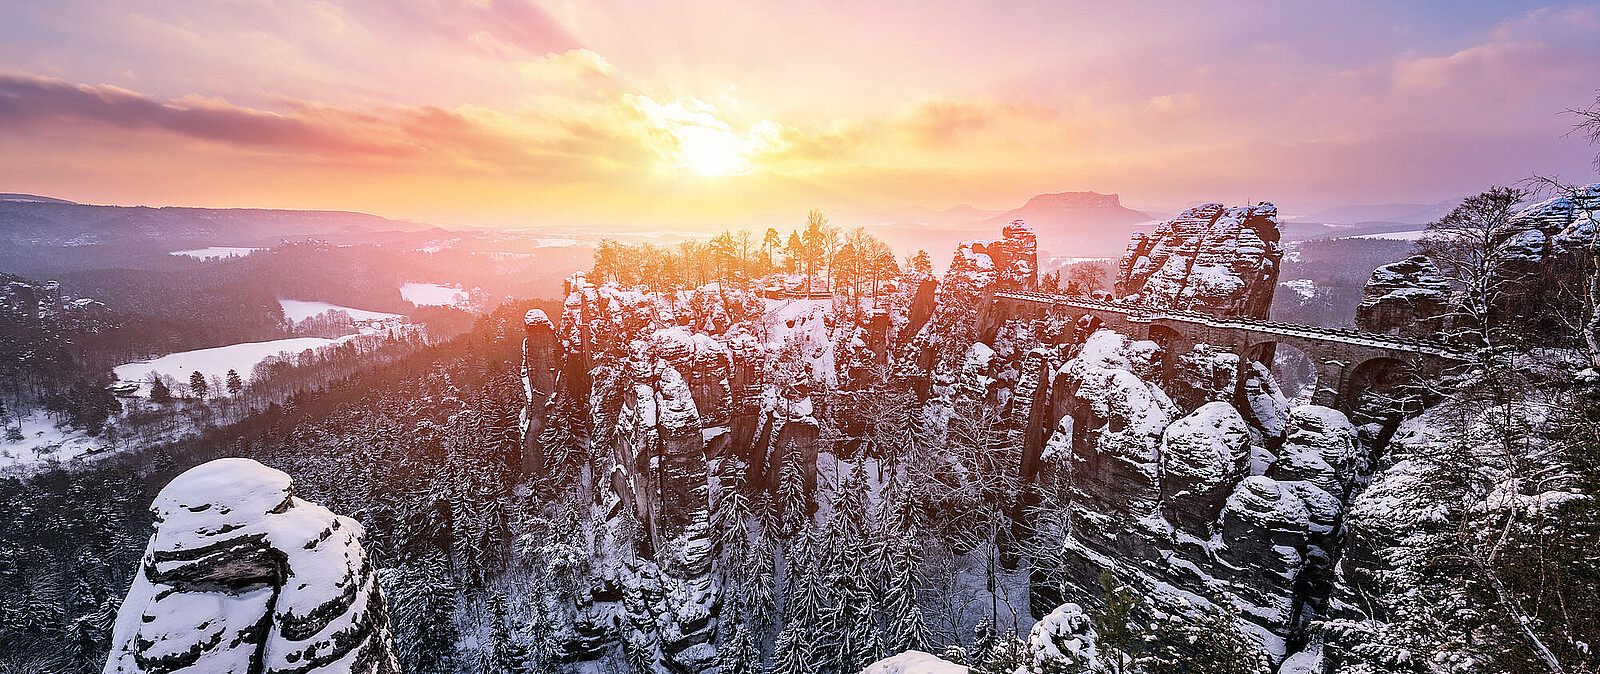 Winterlandschaft und Natur gehören zu Ihrer aktiven Weihnachtsfeier. Die 4 Himmelsrichtungen lernen Sie beim Survivaltraining genauer kennen